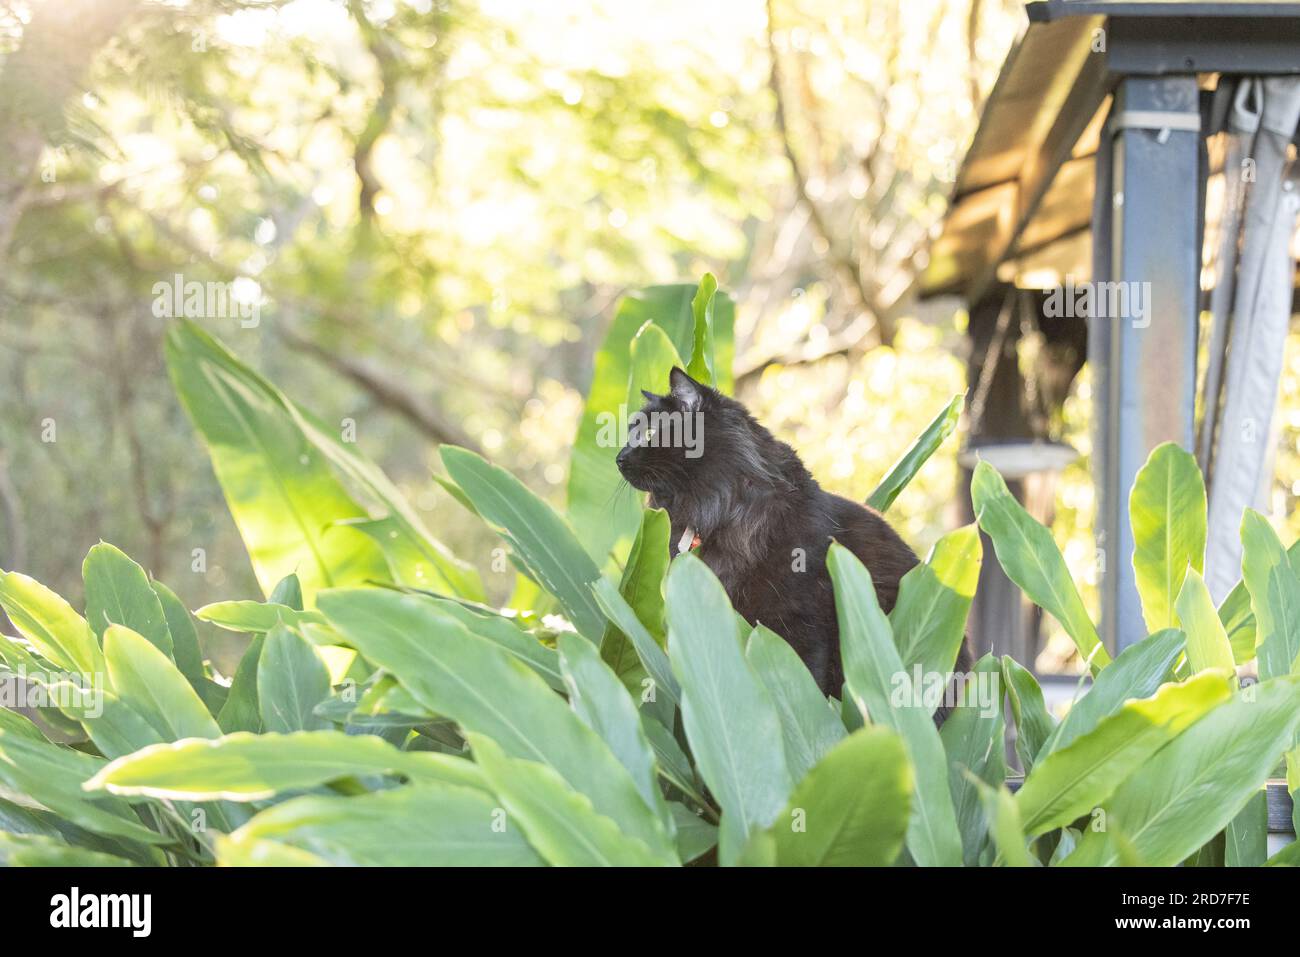 Schwarze Katze versteckt sich in grüner, grüner Pflanze im Dschungelgarten, teilweise freigelegt am hellen Nachmittag Stockfoto